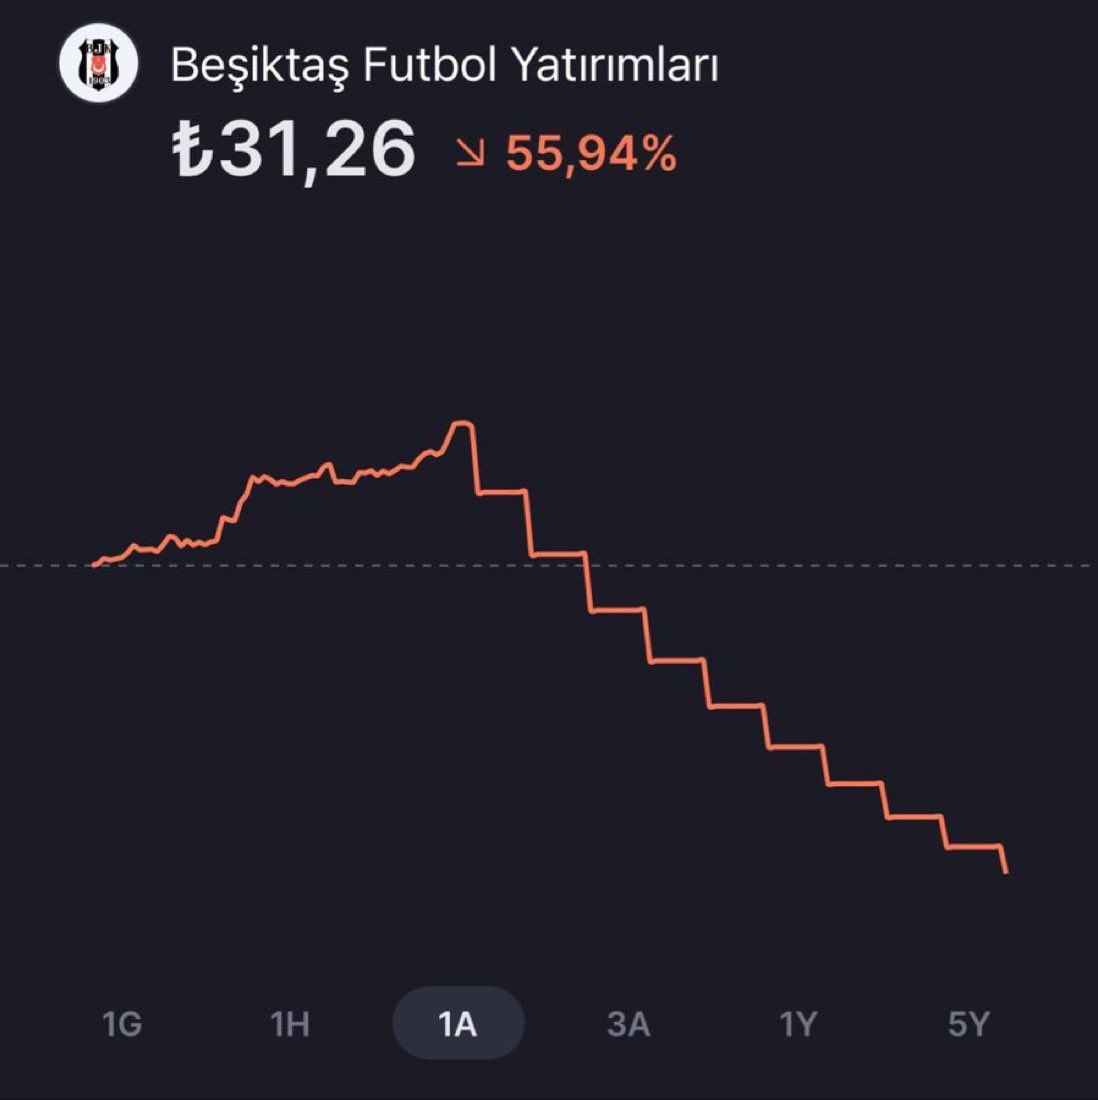 Borsa İstanbul’da Beşiktaş hissesi 10. tabanını gerçekleştirerek 89.30 TL’den 31.26 TL’ye düştü. Sizce Alınır mı?